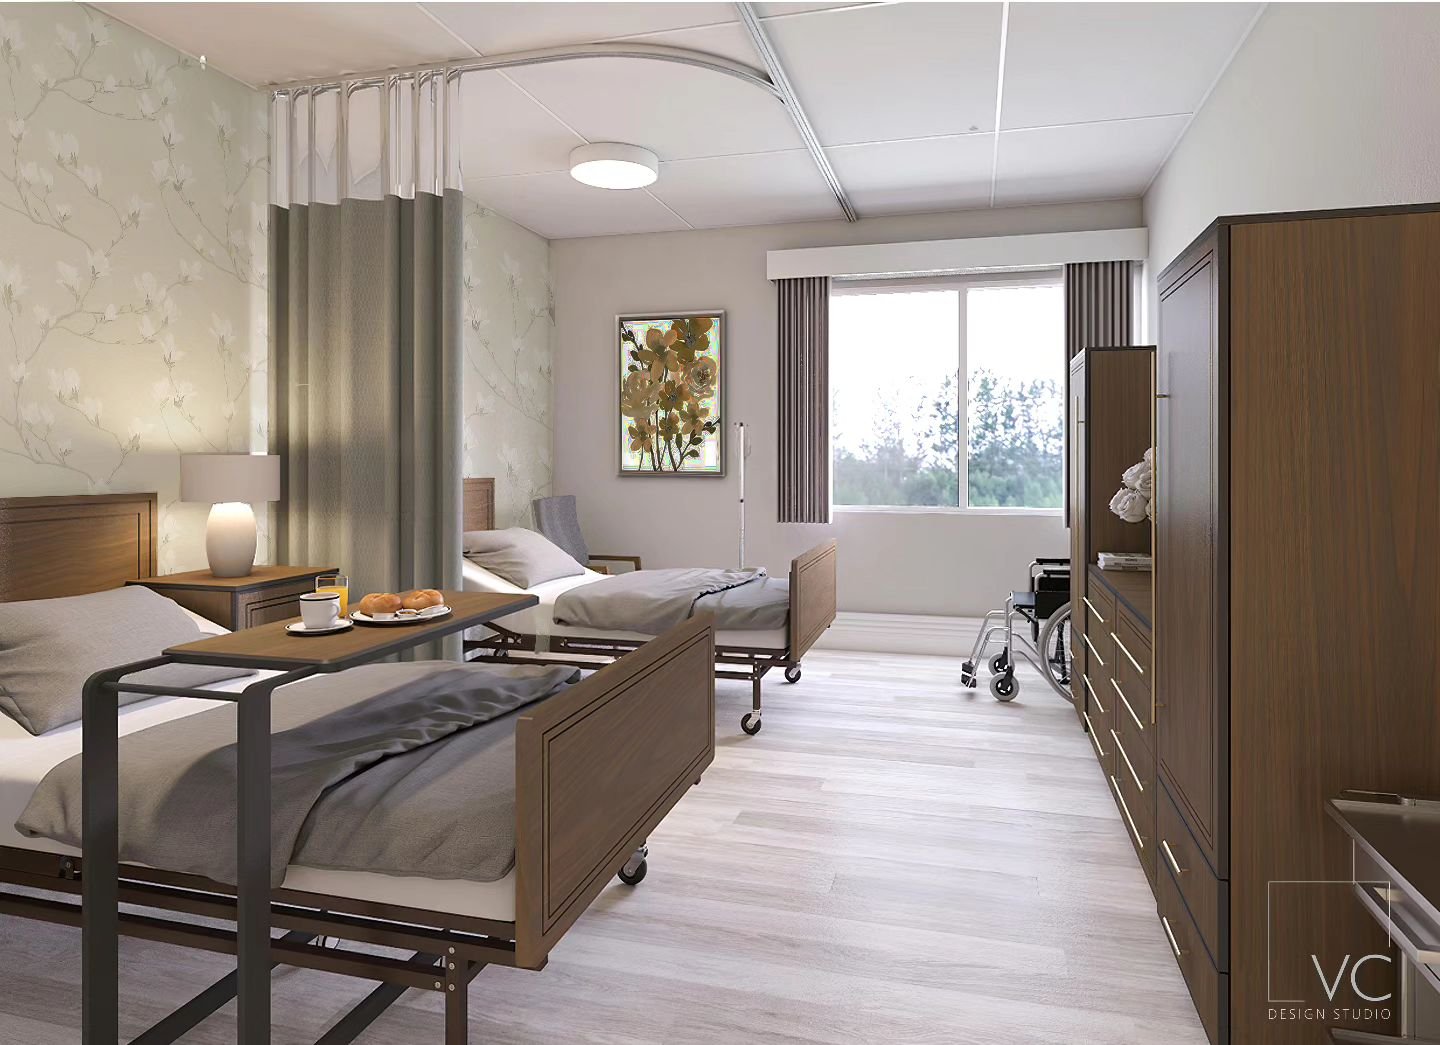 Residents room 
#residentroomdesign #healthcaredesign #Healthcareinteriordesign #rehabcenterinteriordesign